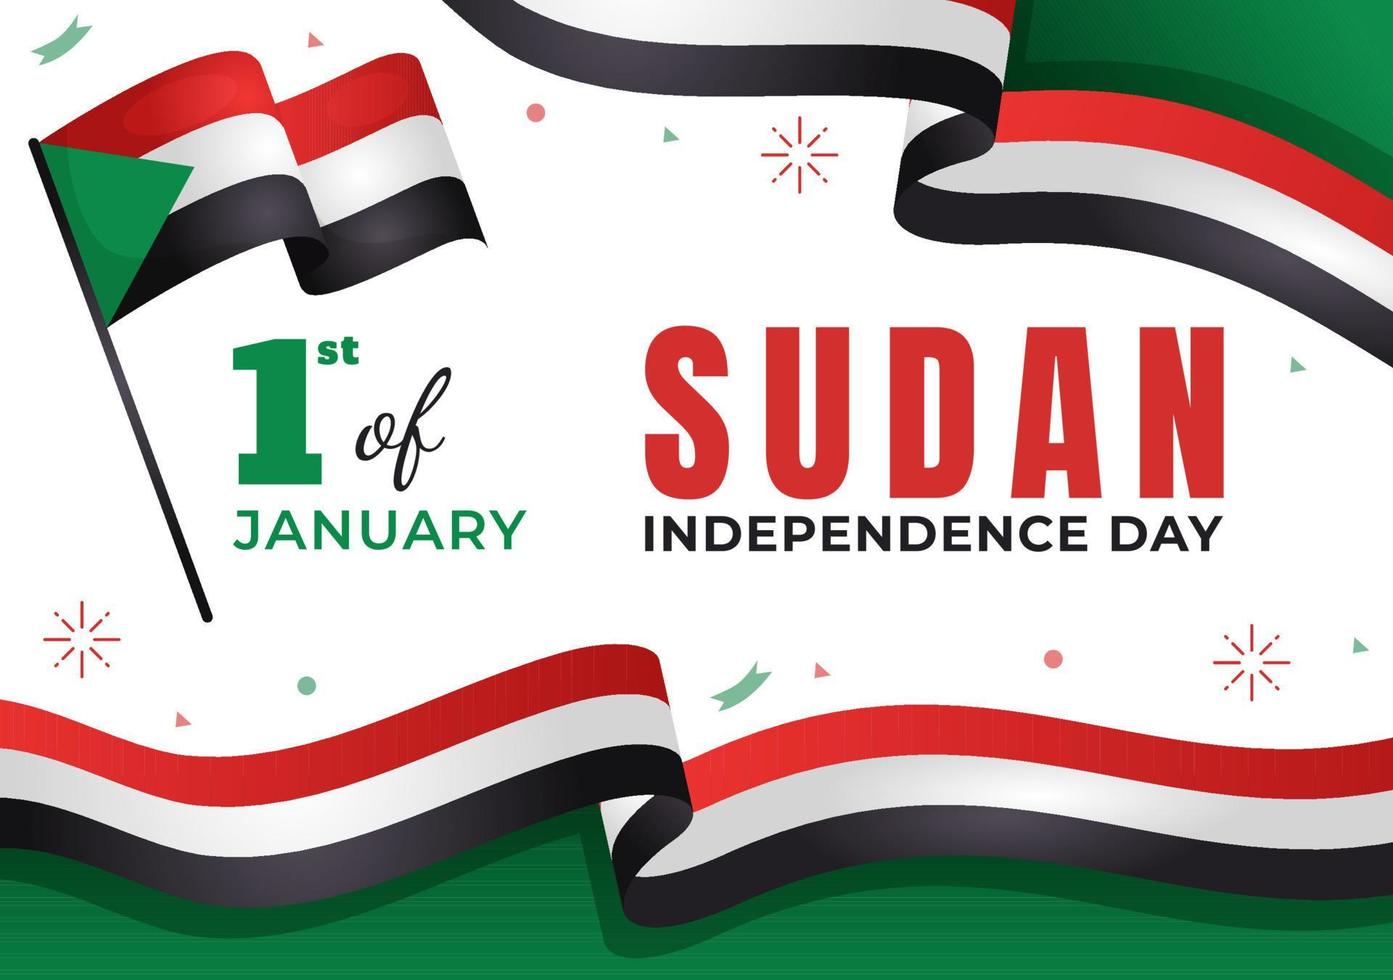 sudanesischer unabhängigkeitstag am 1. januar mit flaggen und sudanesischem nationalfeiertag in flacher hand gezeichneter schablonenillustration des karikaturhintergrundes vektor